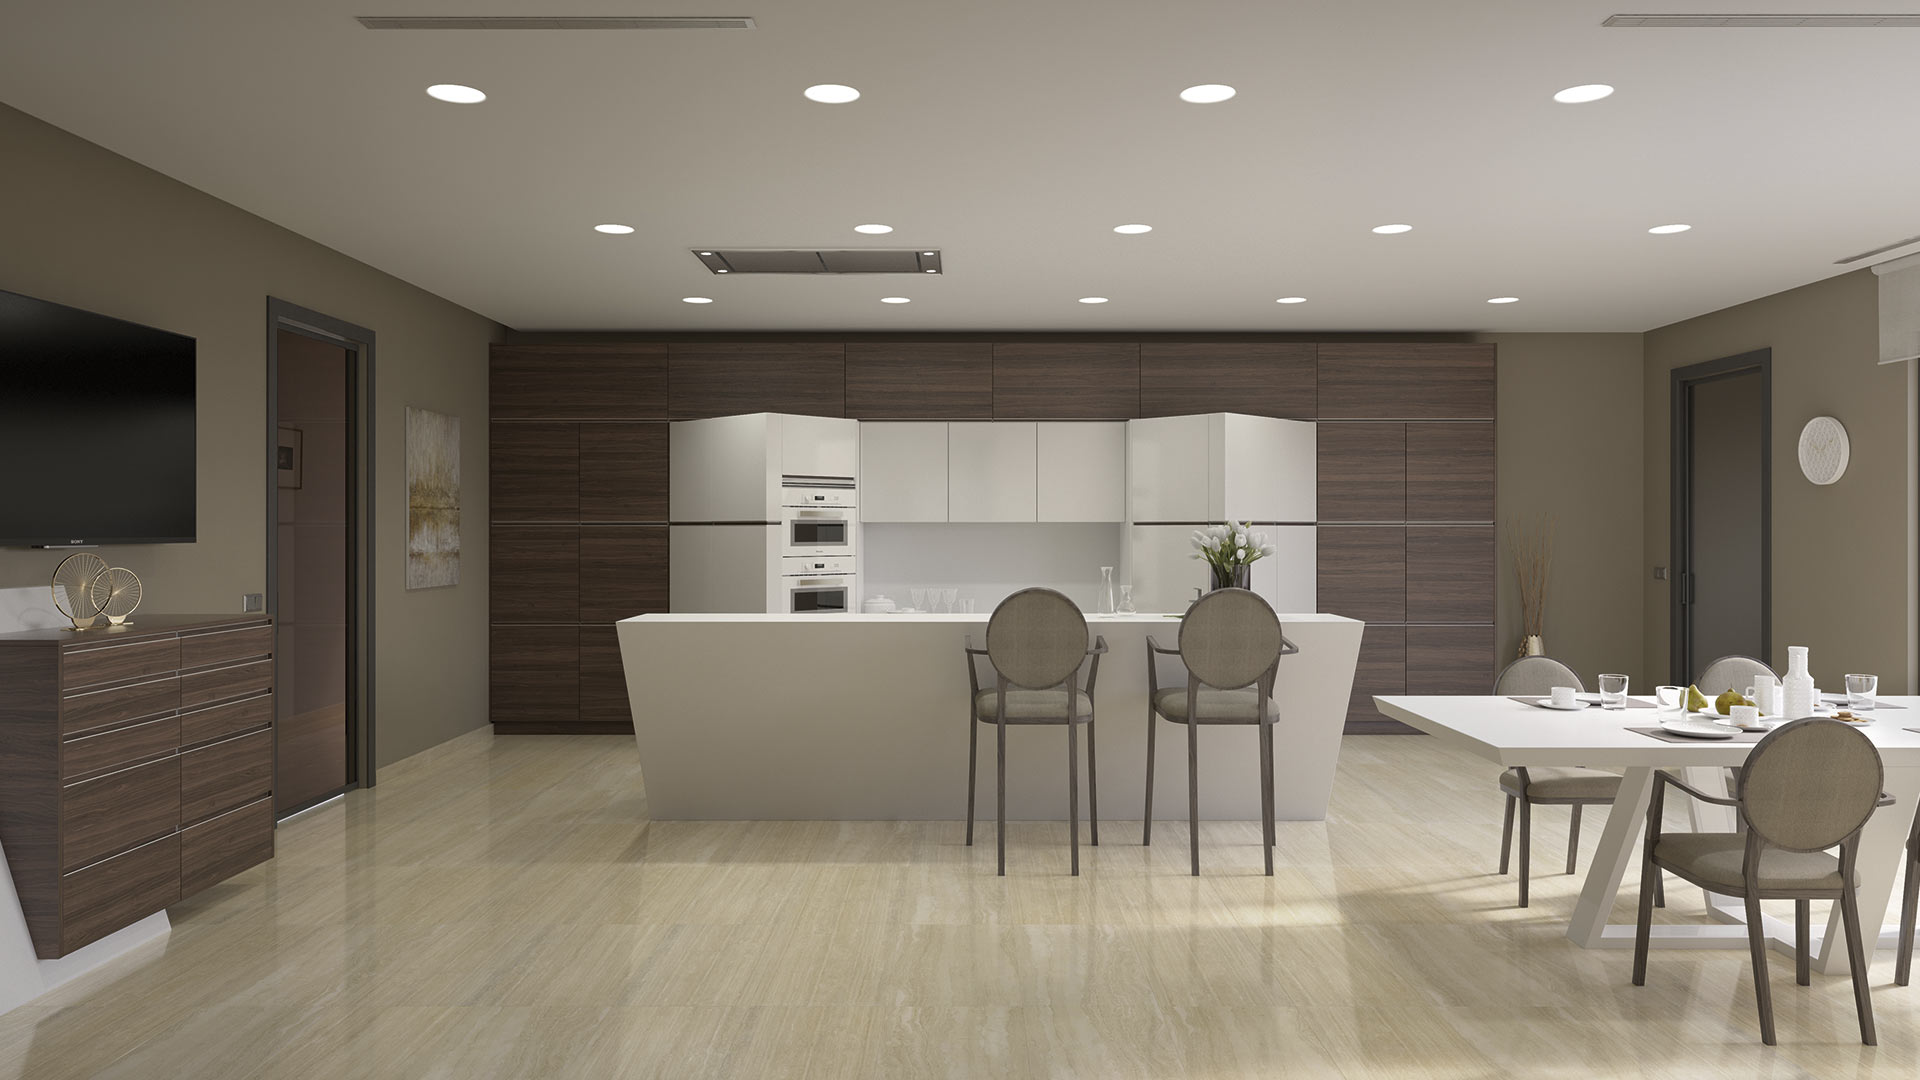 Innovadora cocina con formas geométricas de estilo futurista con mobiliario en color blanco